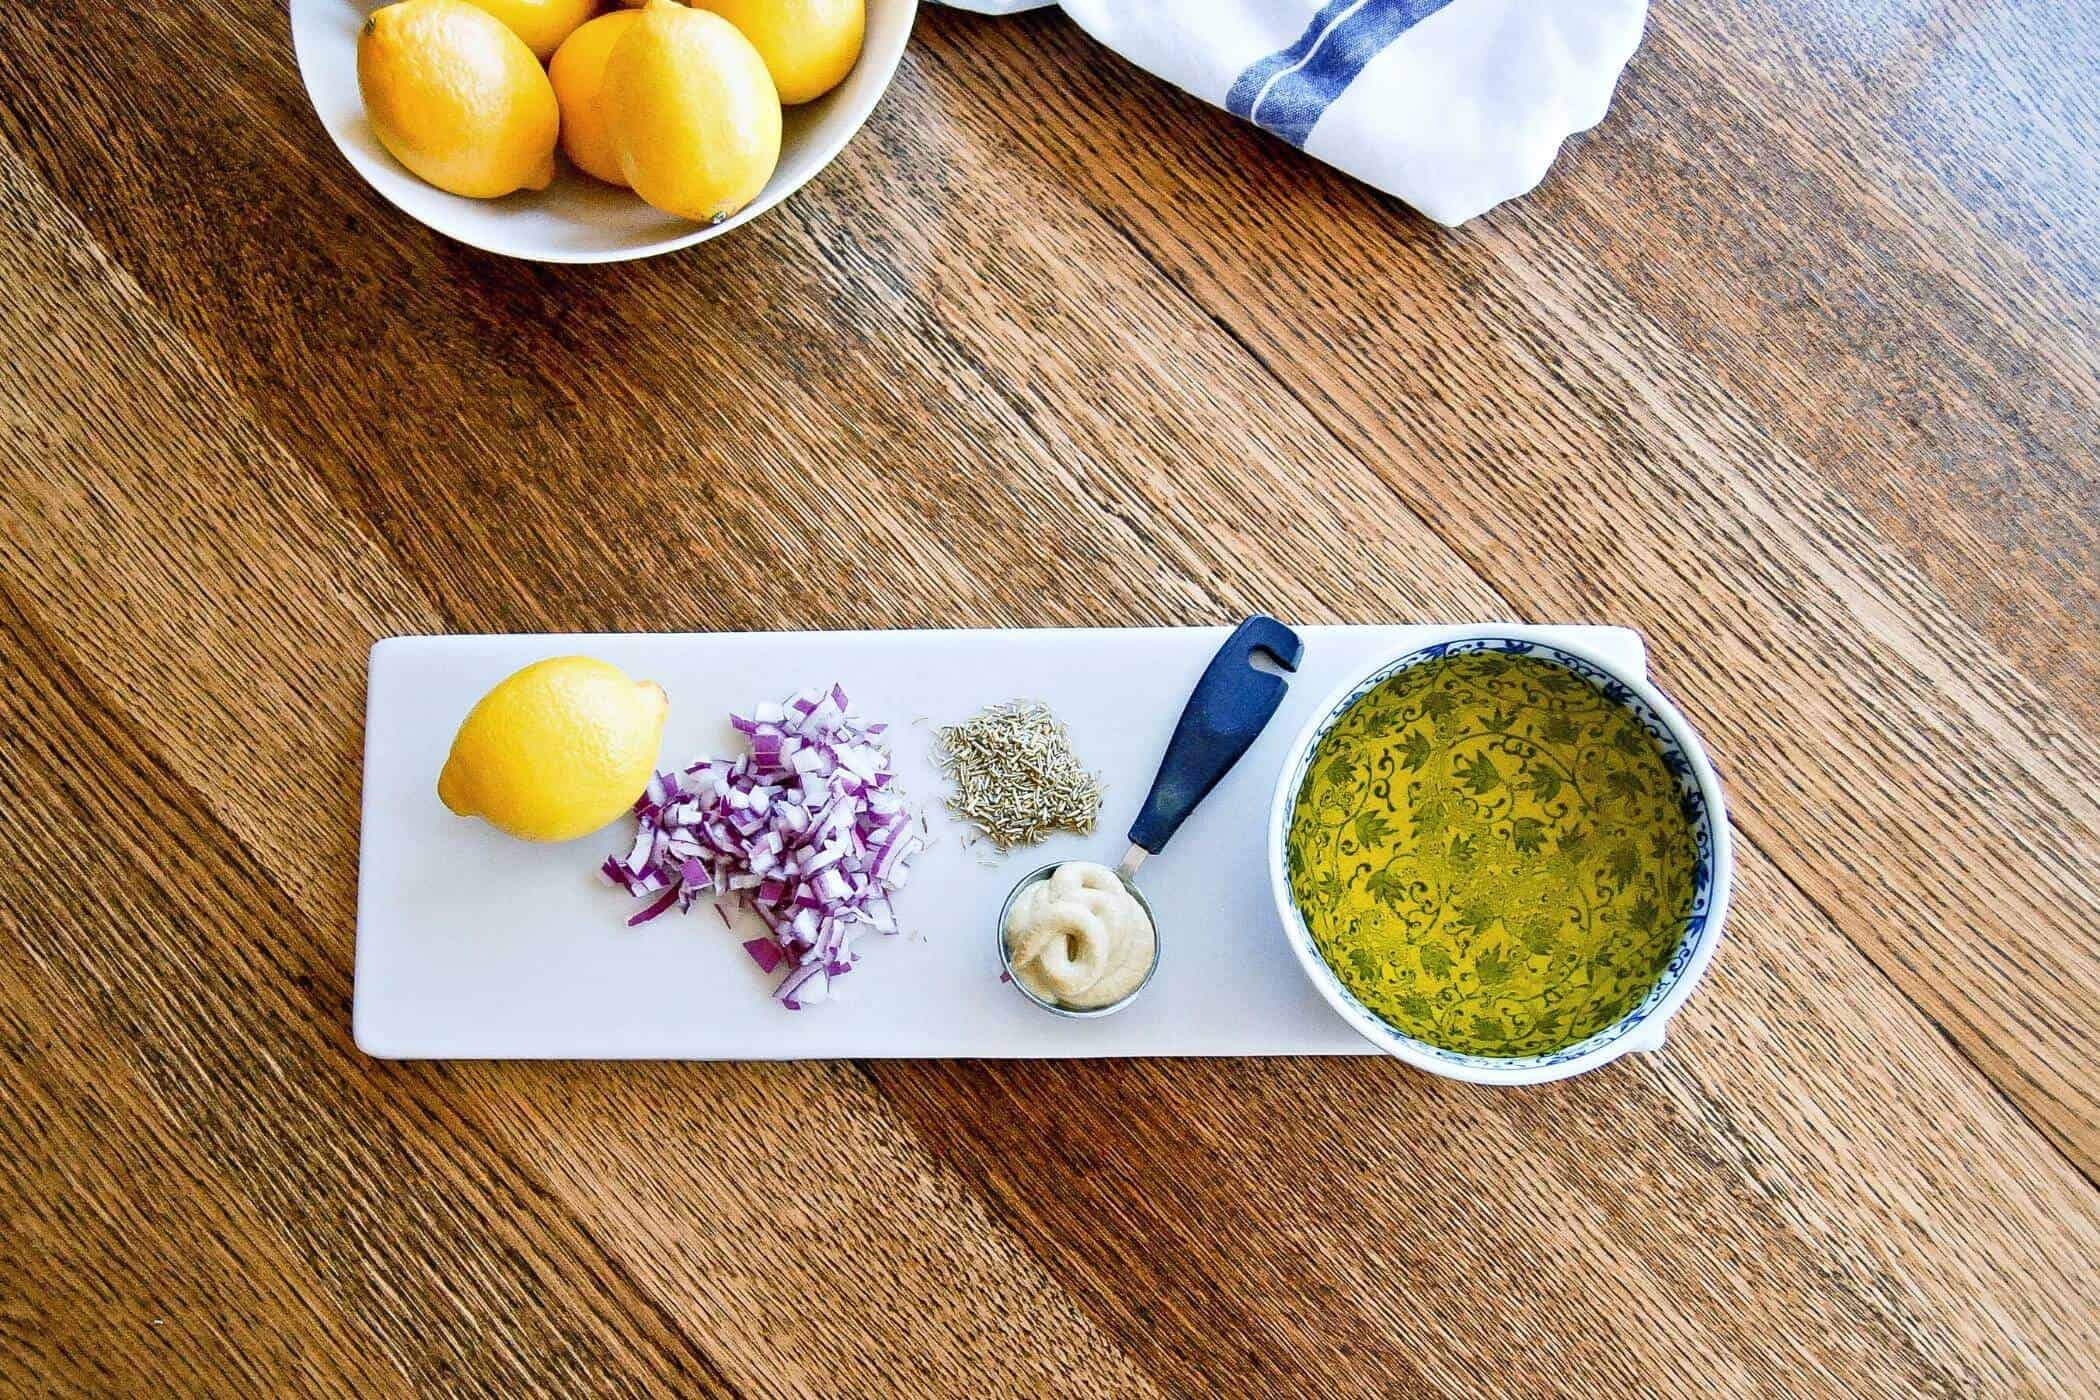 lemon and rosemary vinaigrette ingredients on table.